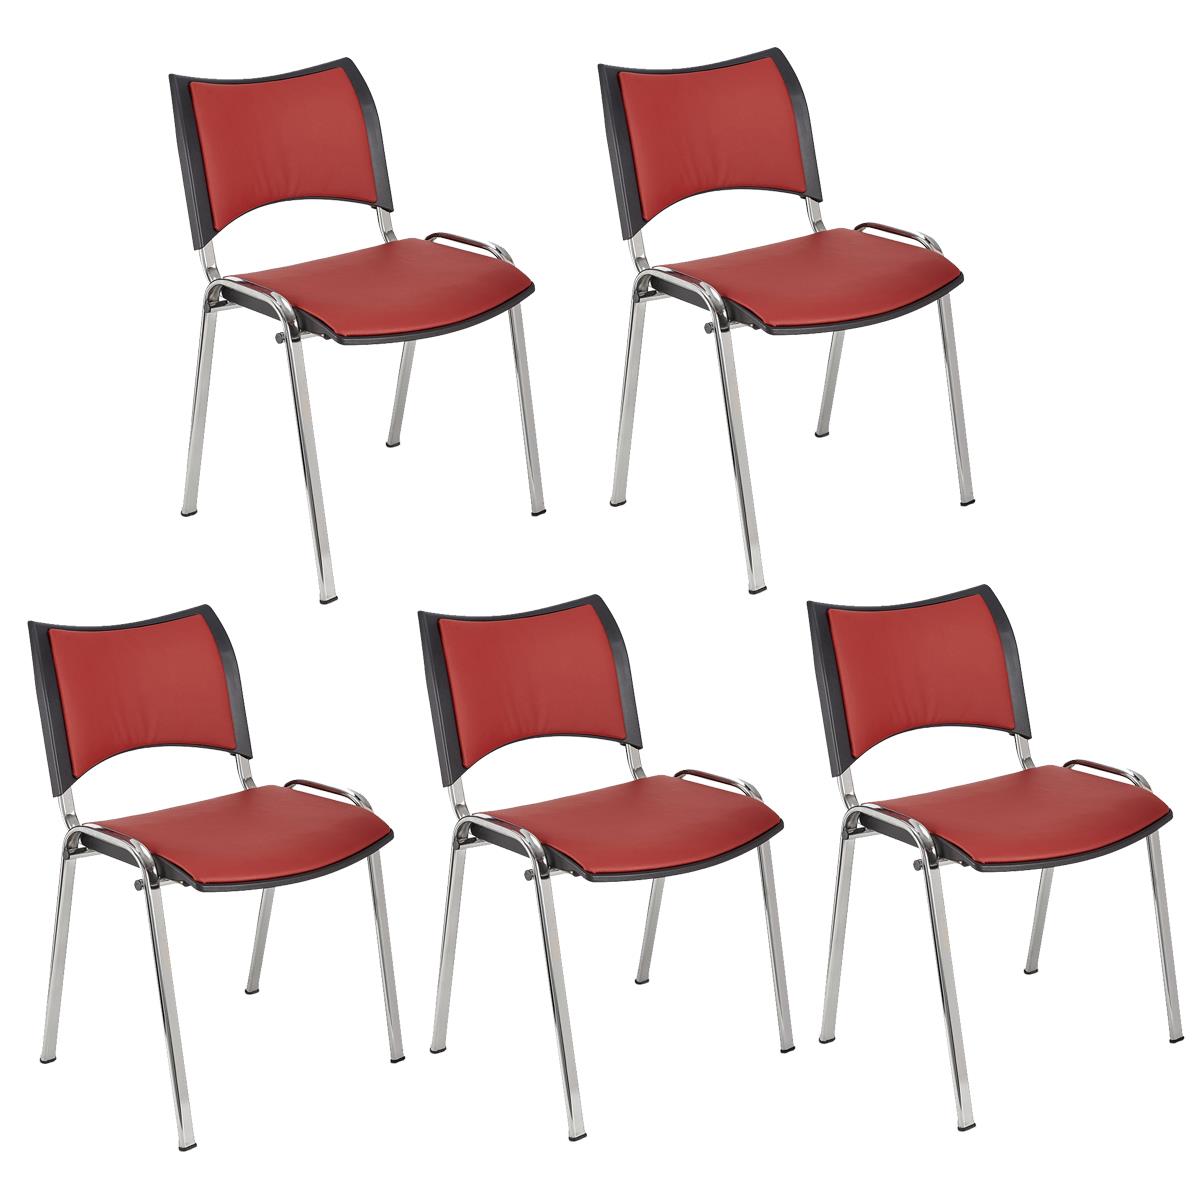 Lote 5 Cadeiras de Visita ROMEL PELE, Prática e Empilhável, Pernas Cromadas, Vermelho